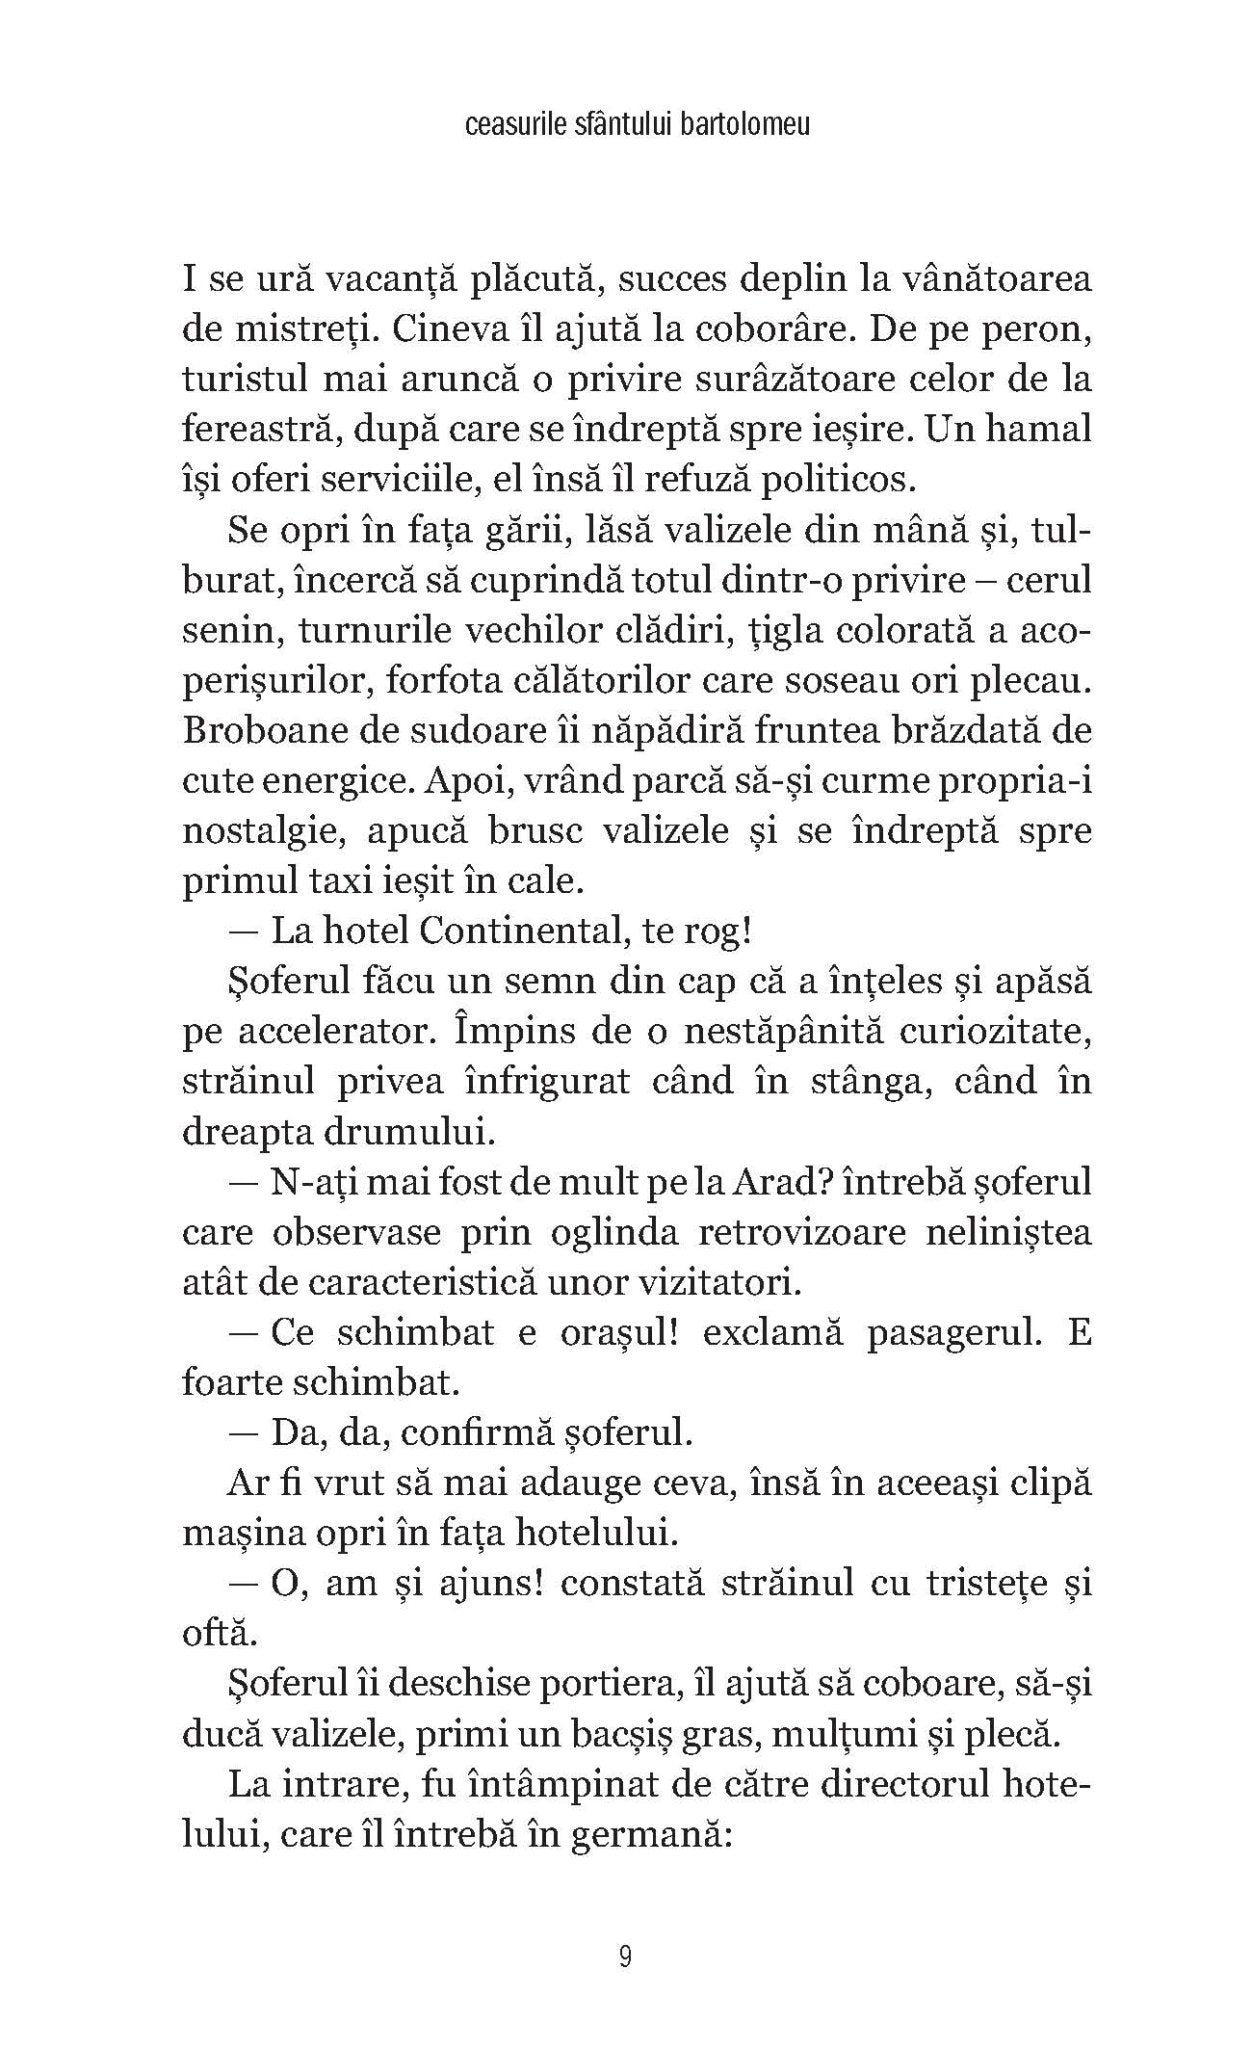 Ceasurile Sfantului Bartolomeu; Temerarul - Ed. digitala - Publisol.ro